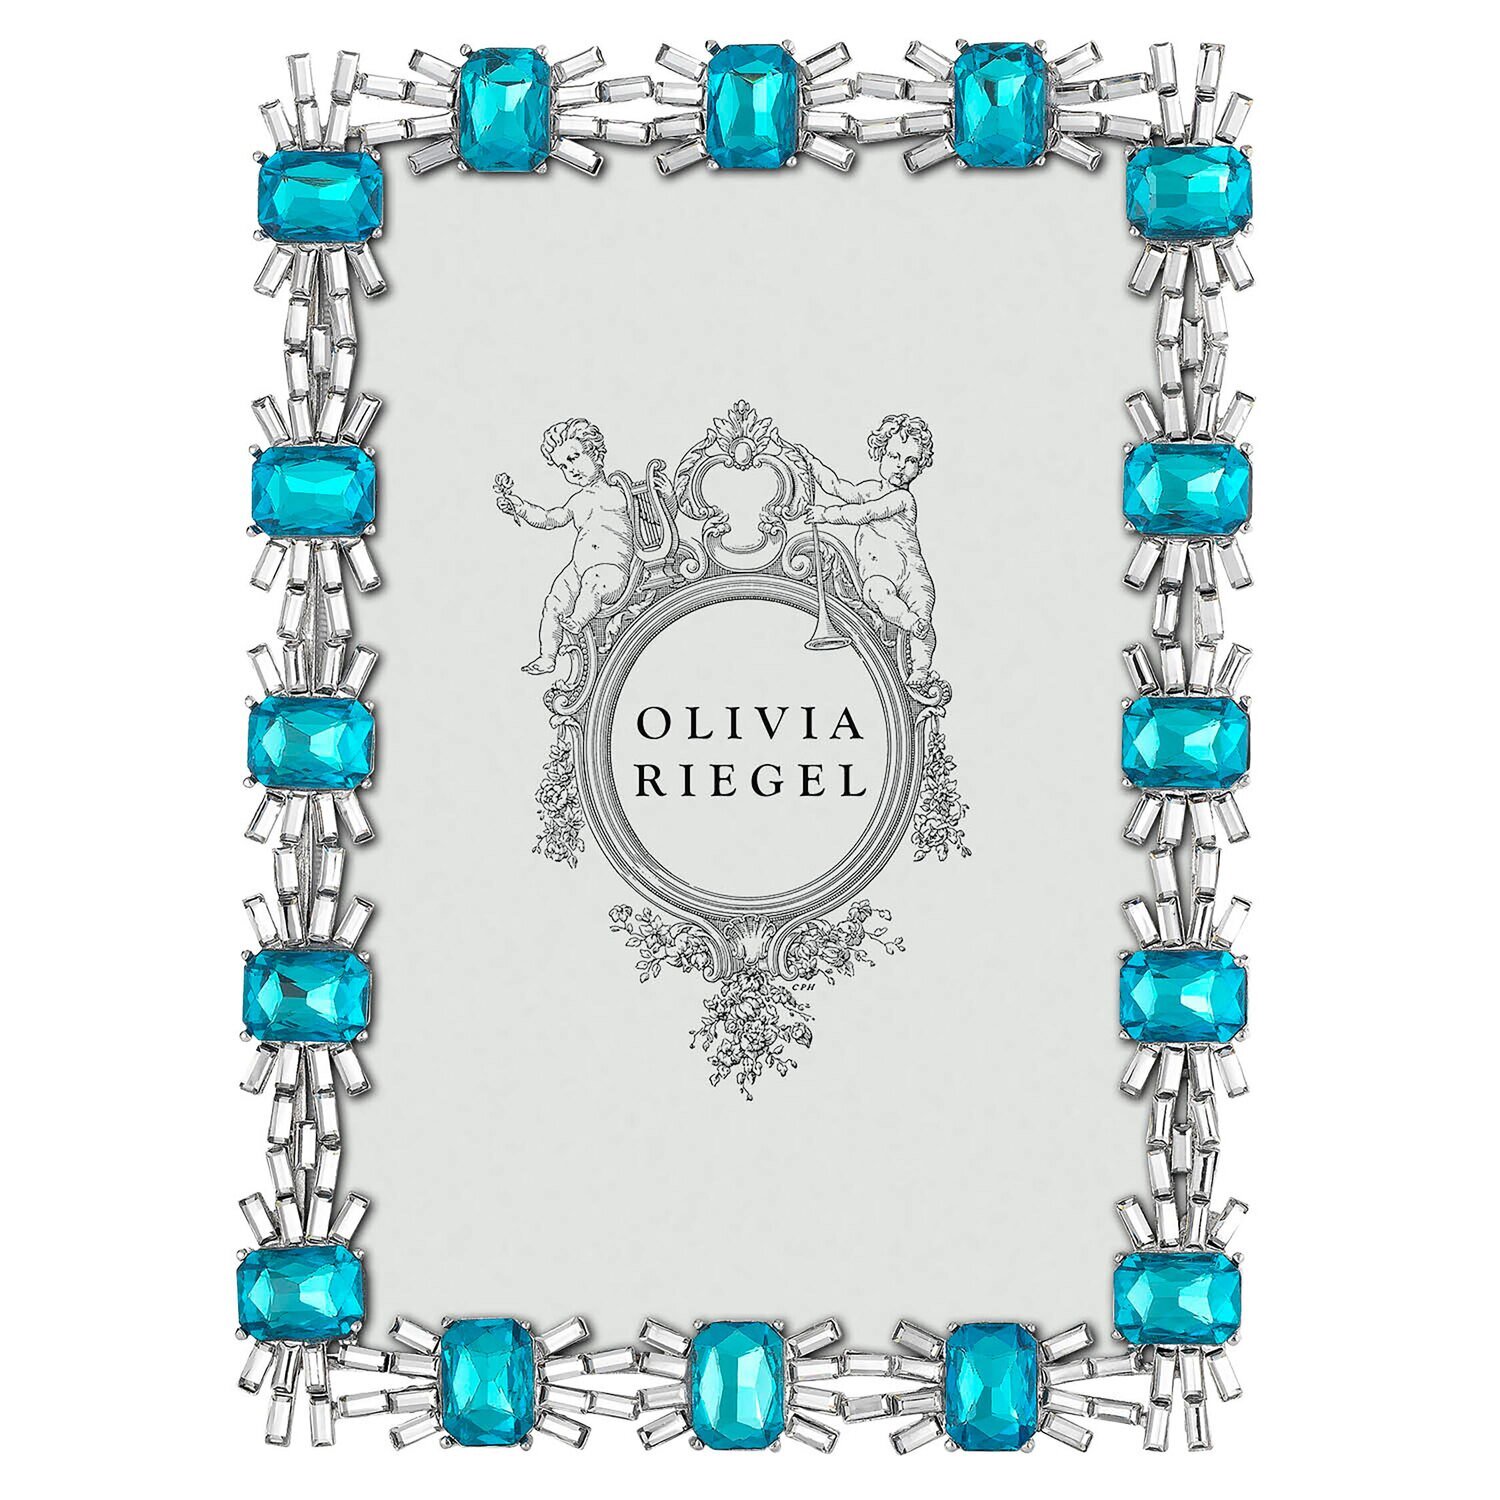 Olivia Riegel Blue Tourmaline Aurora 5 x 7 Inch Picture Frame RT4806